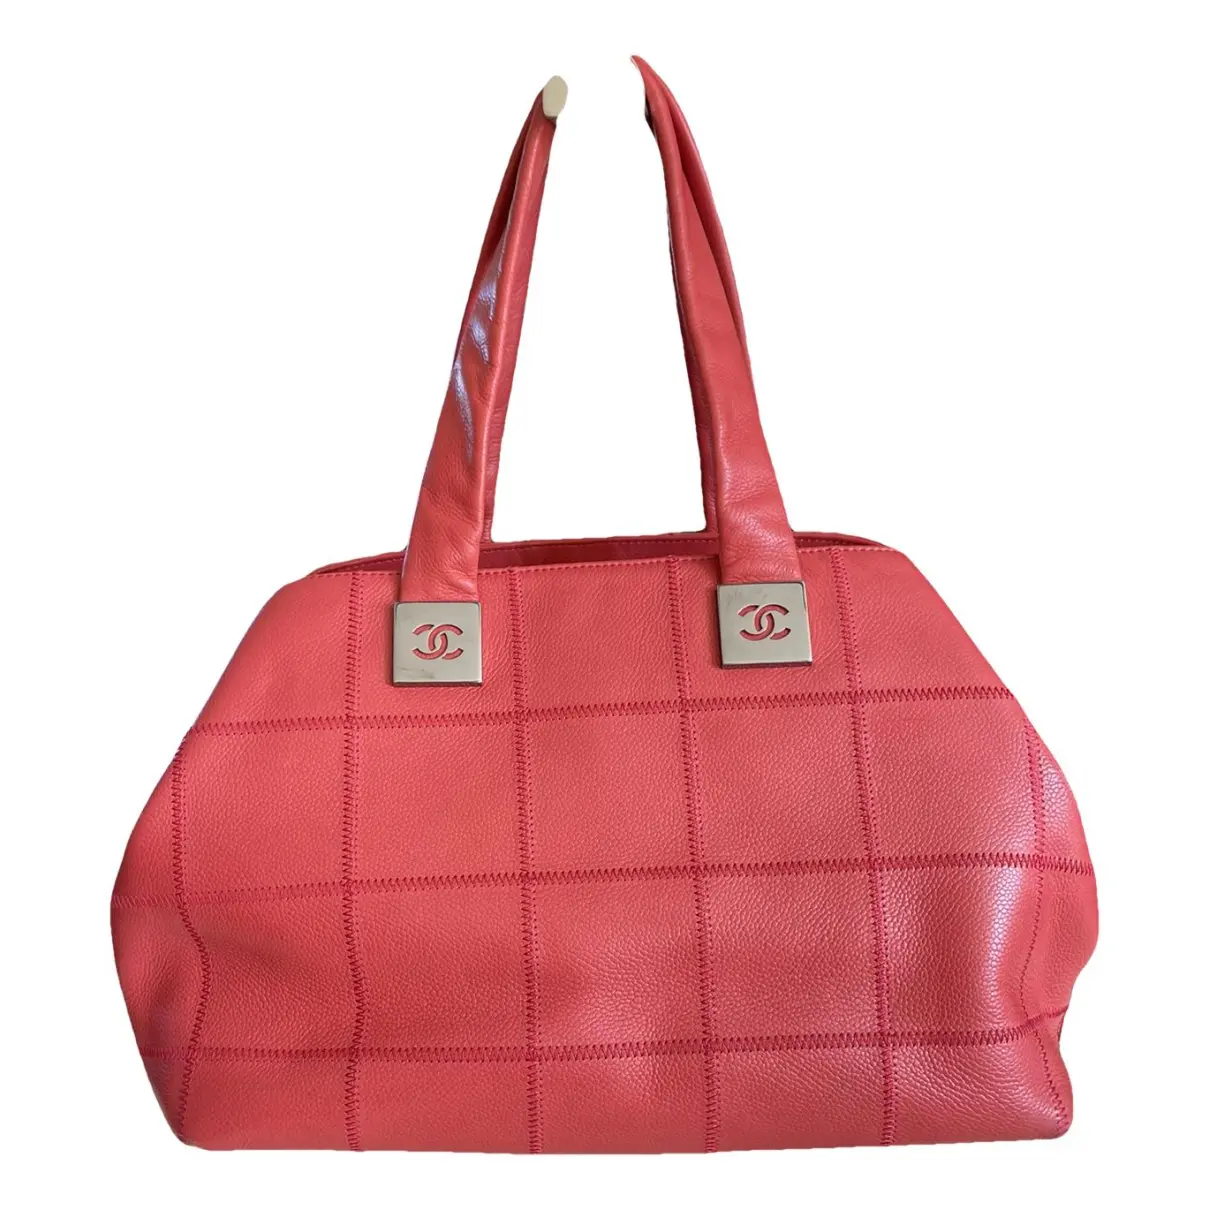 Bowling Bag leather handbag